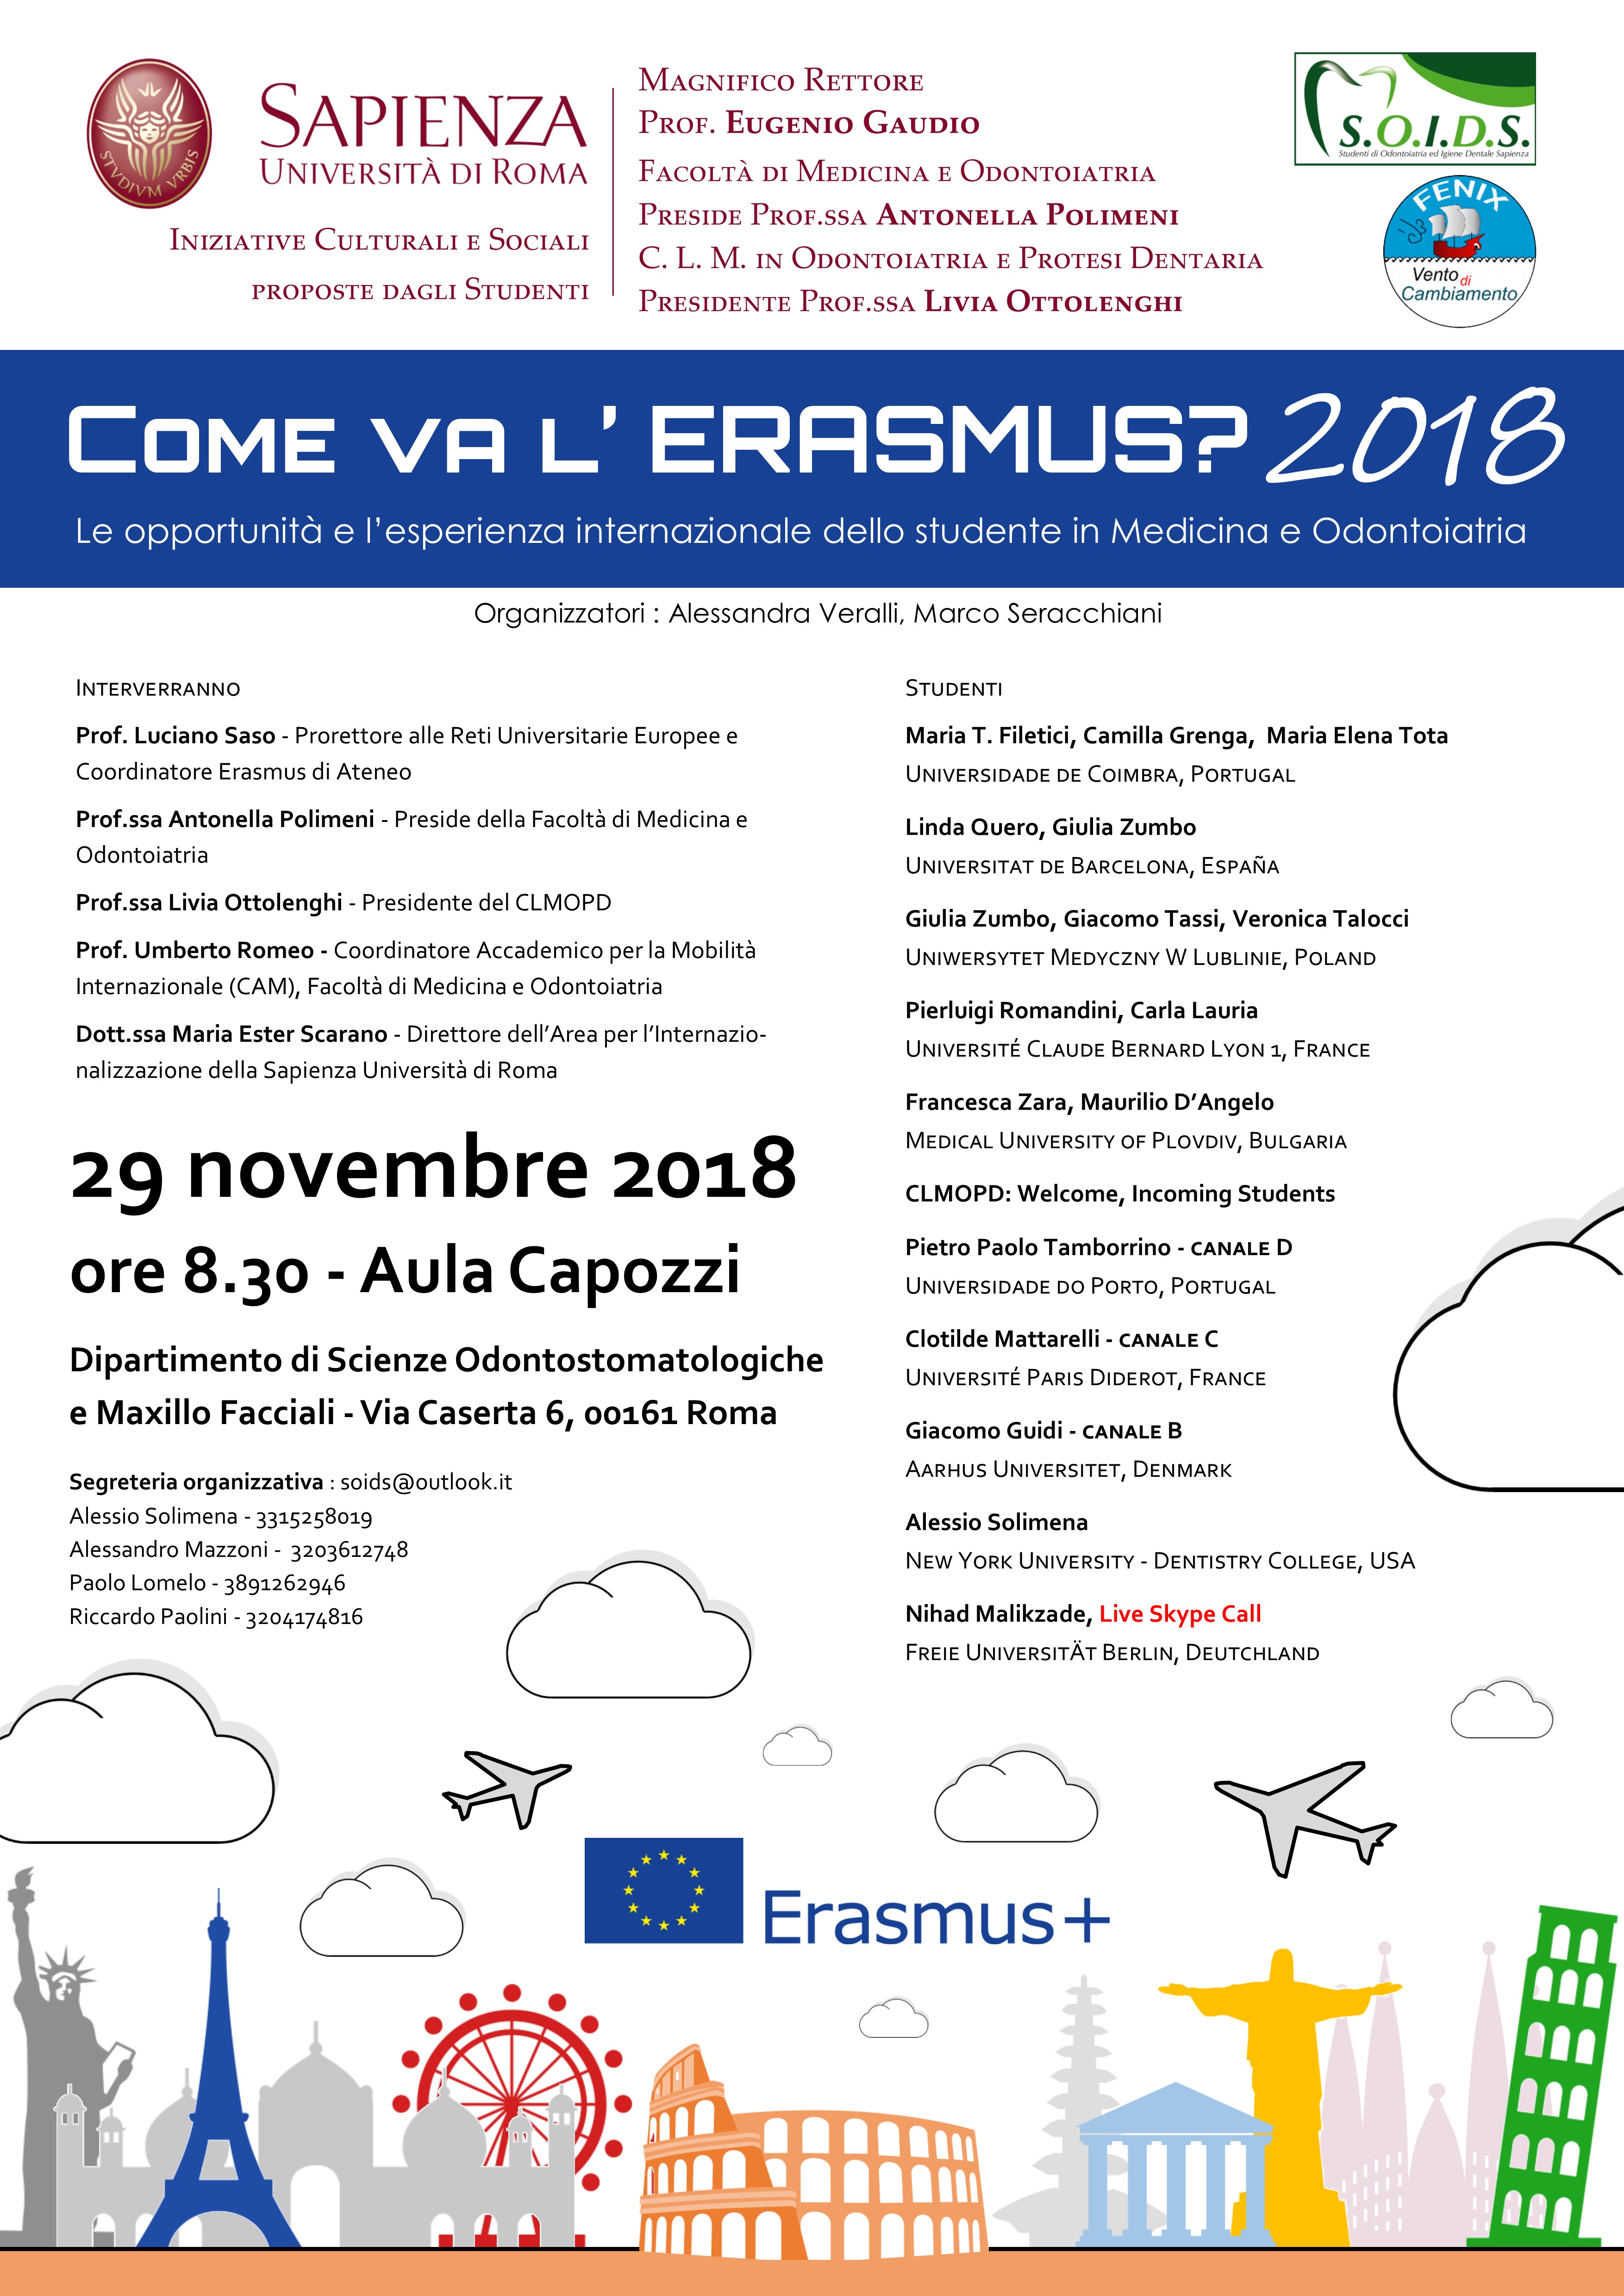 المرفق Come va lErasmus 2018 - Locandina (1).jpg